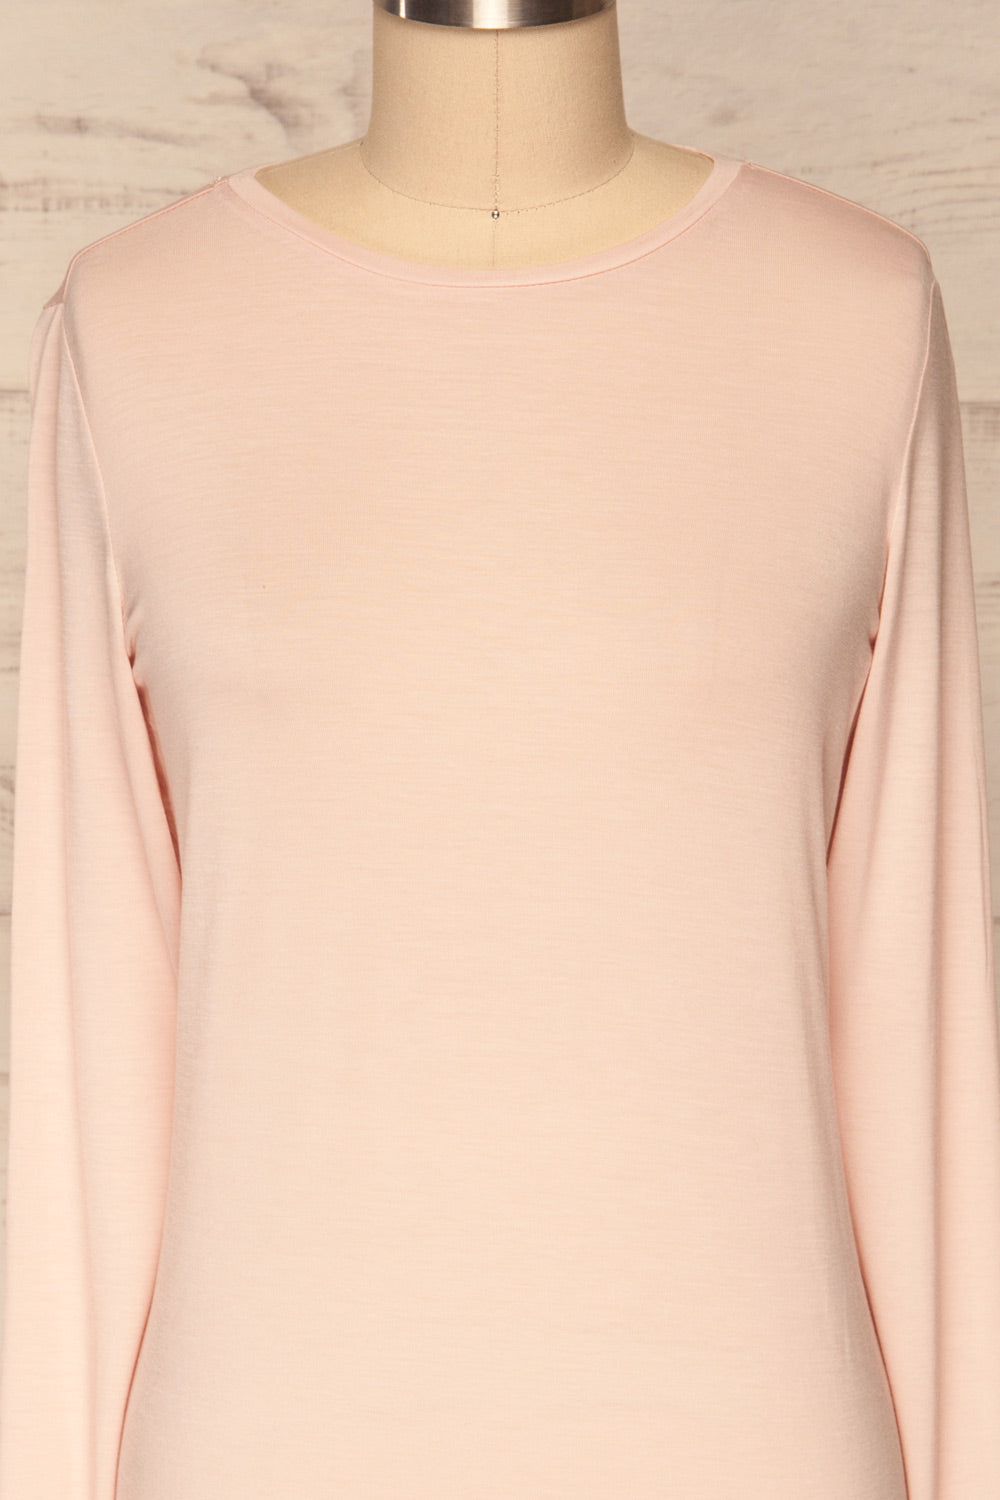 Huddinge Light Pink Long Sleeved T-Shirt front close up | La Petite Garçonne